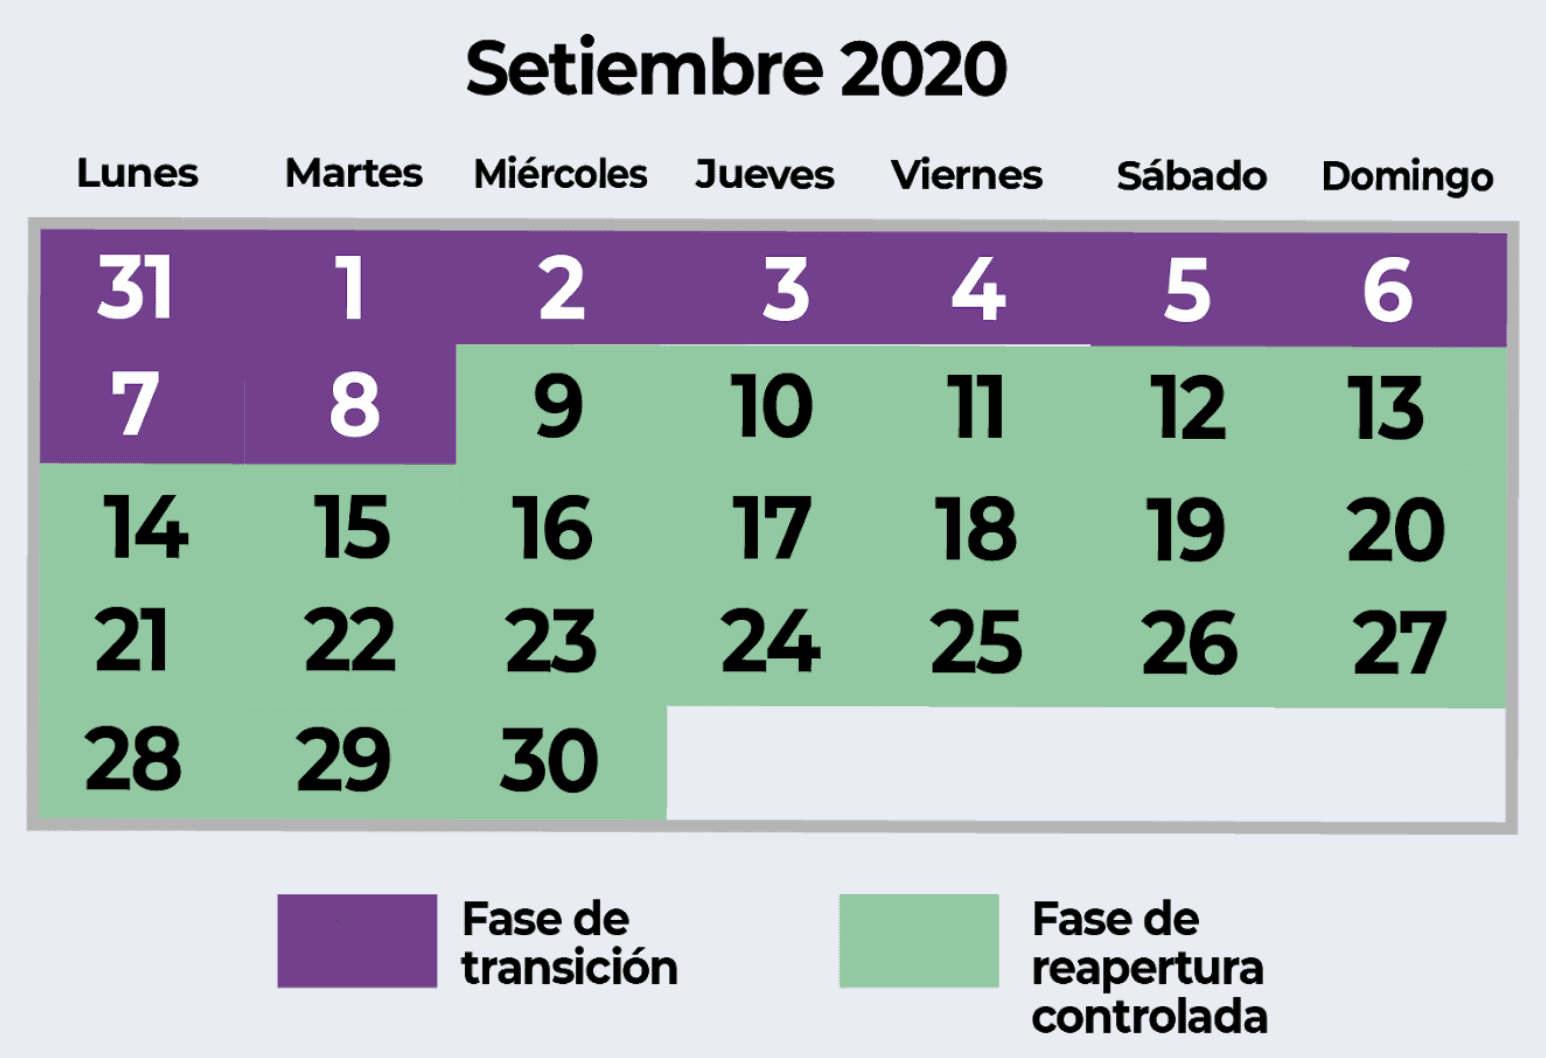 Costa Rica coronavirus measures phases in September